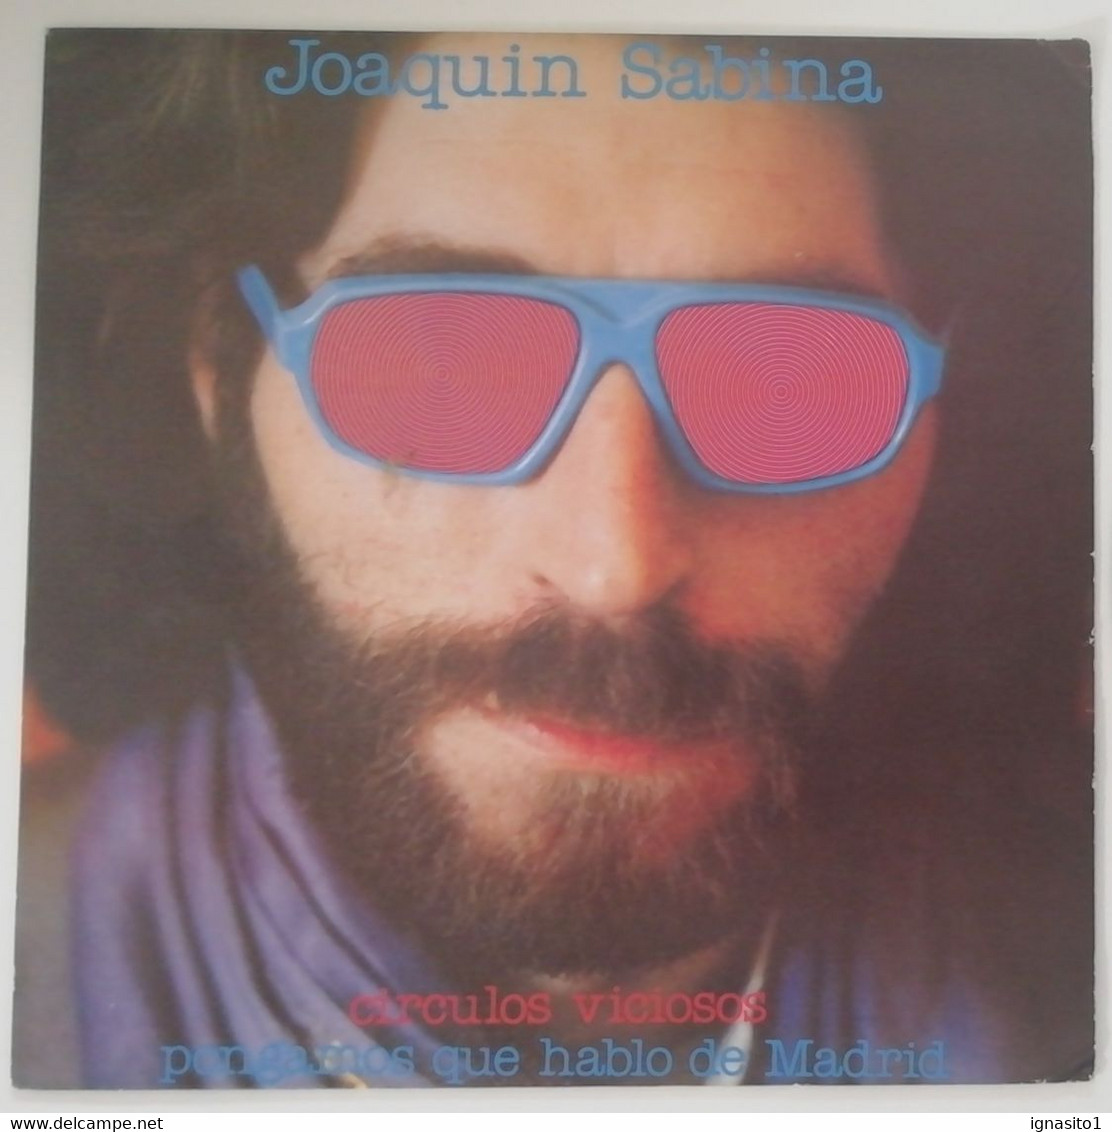 Joaquin Sabina - Círculos Viciosos / Pongamos Que Hablo De Madrid - Disco Promocional - Año 1981 - Other - Spanish Music